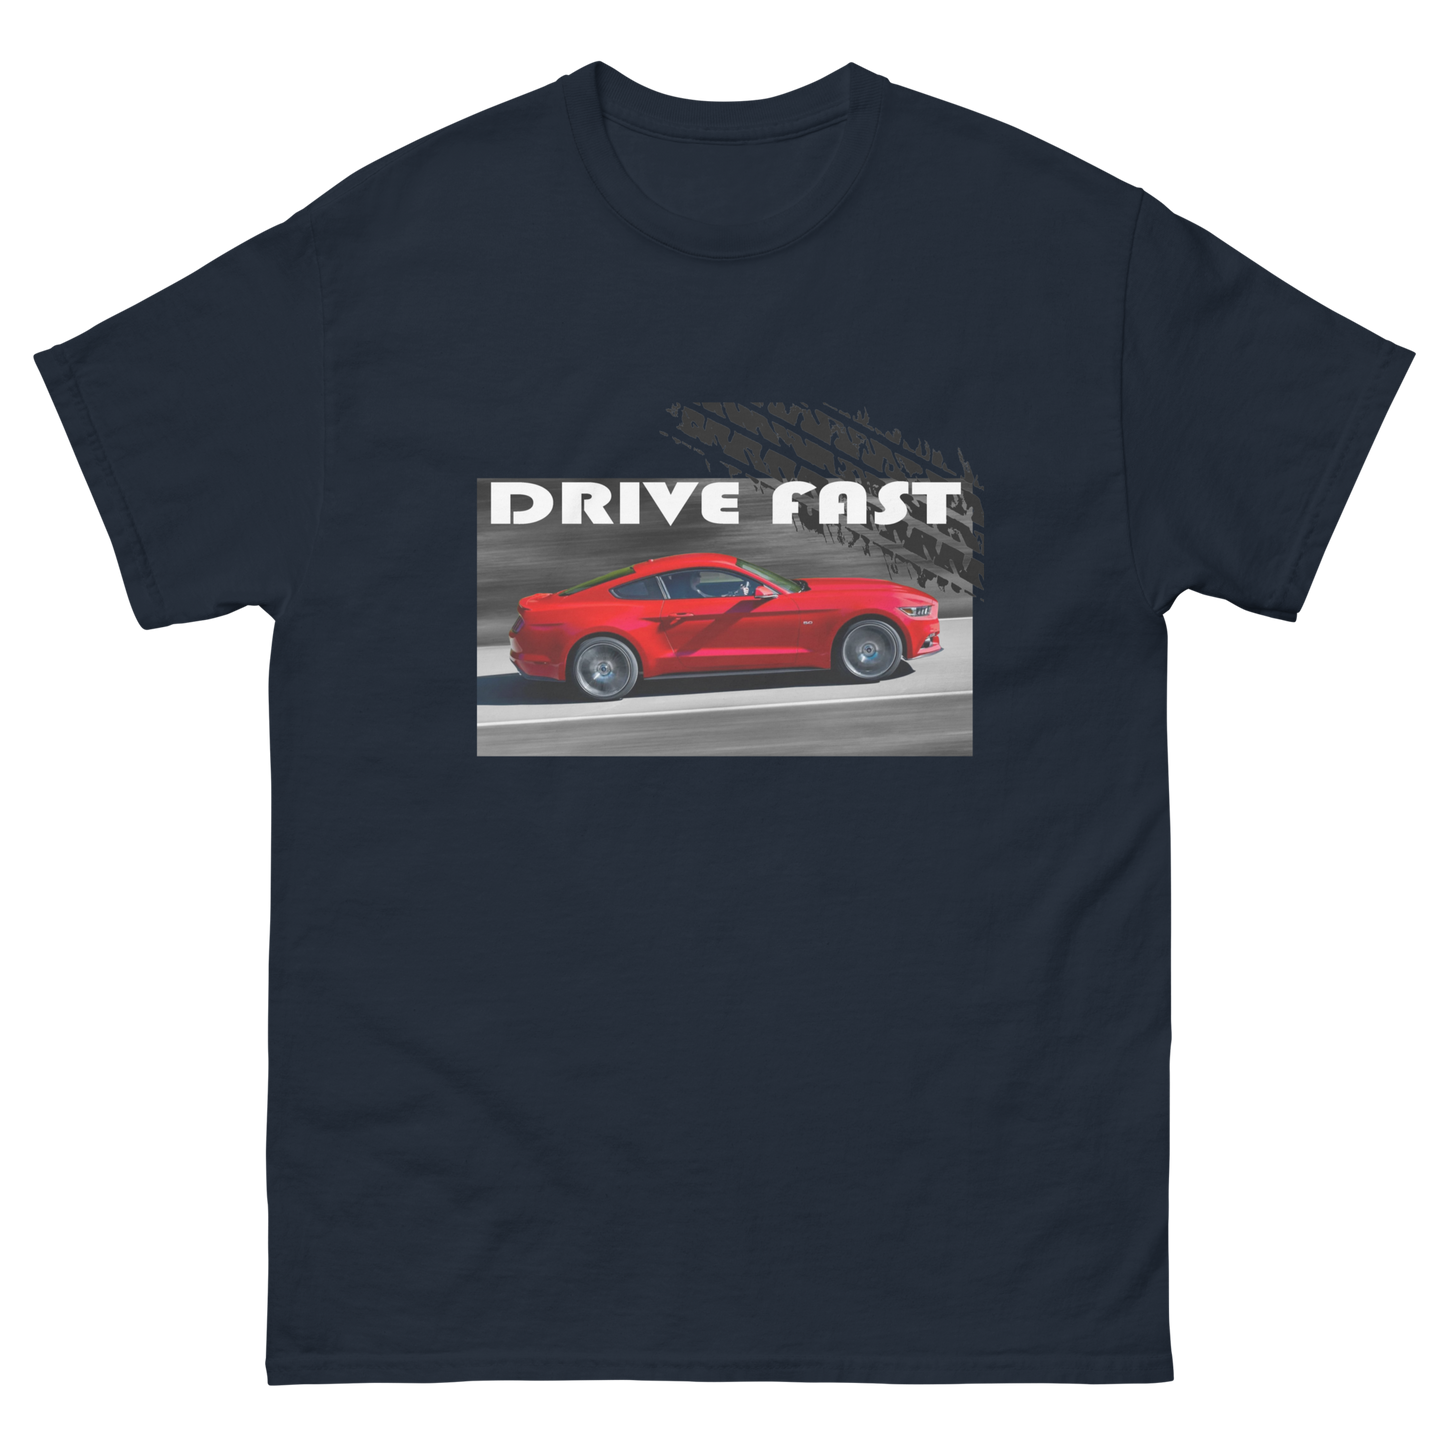 Drive fast